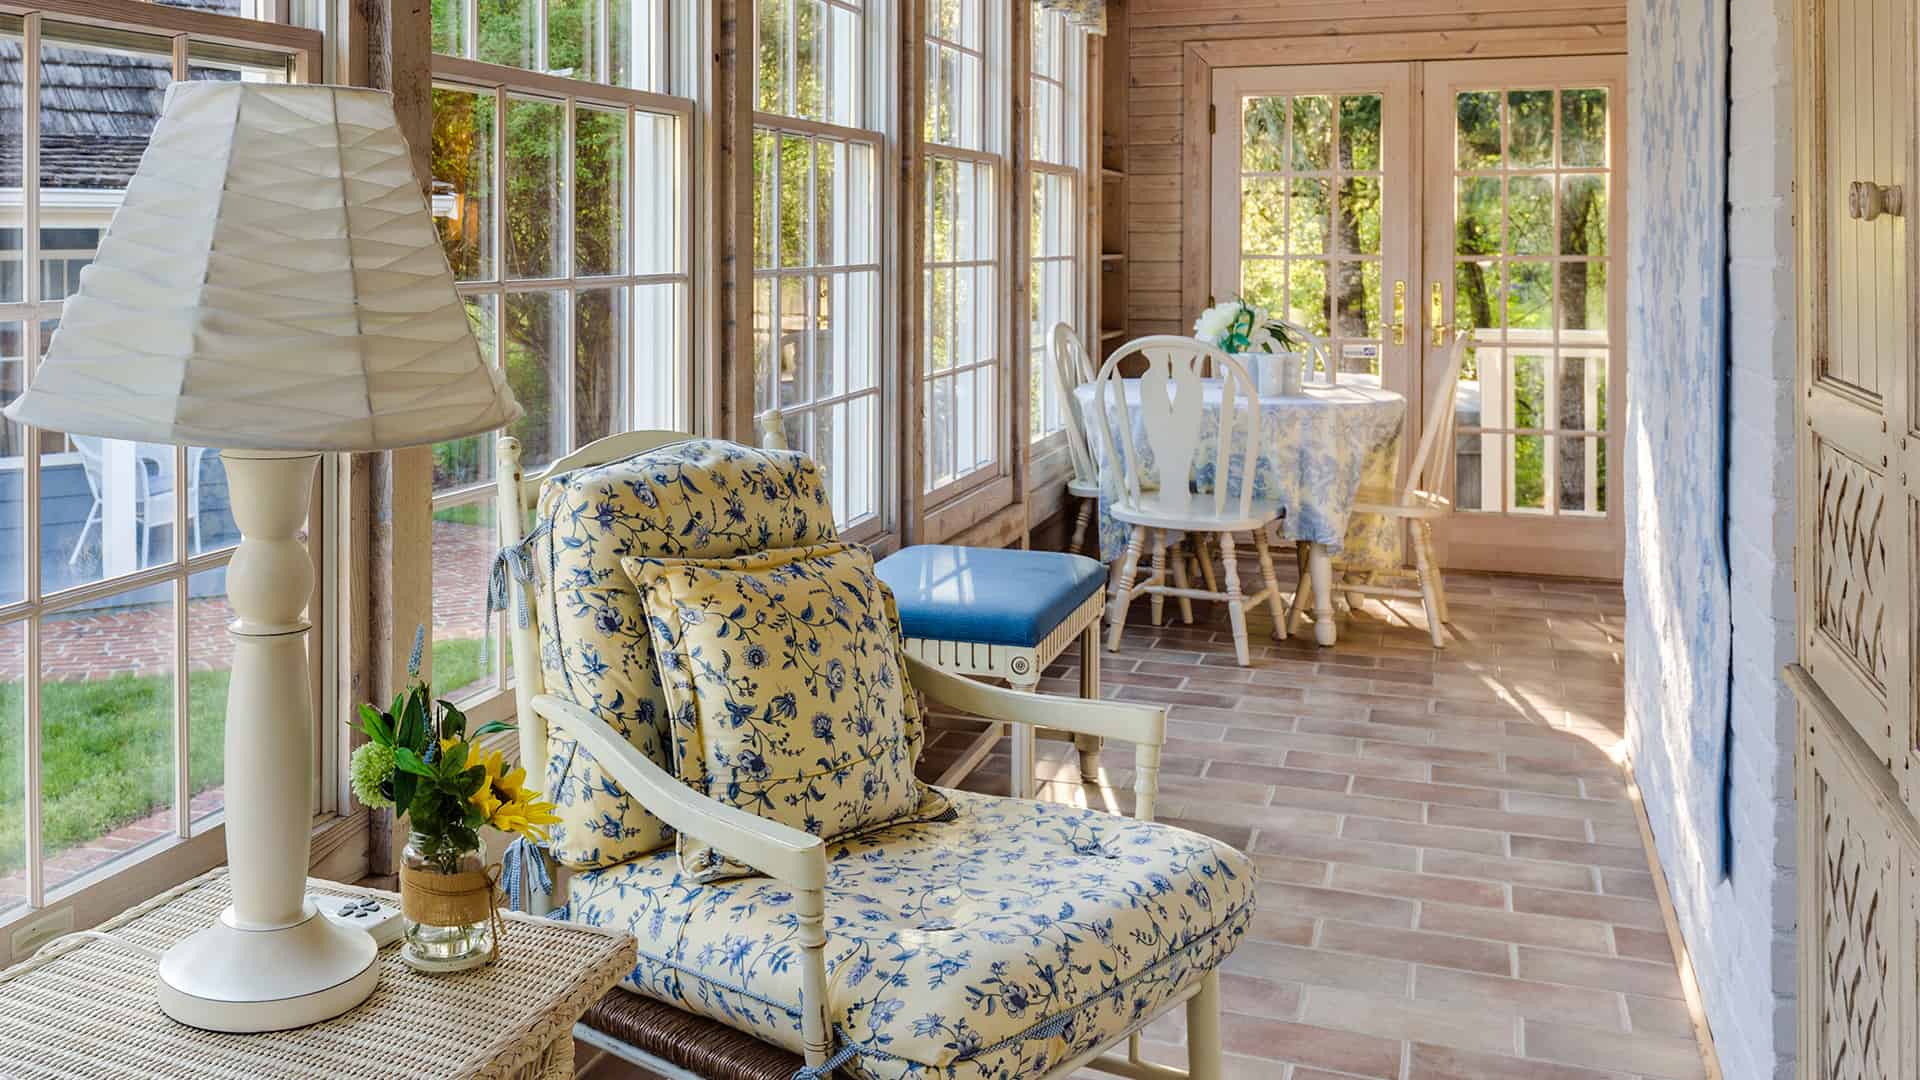 Bareo Interior Design - Decor Guide - Decor Cottage Style